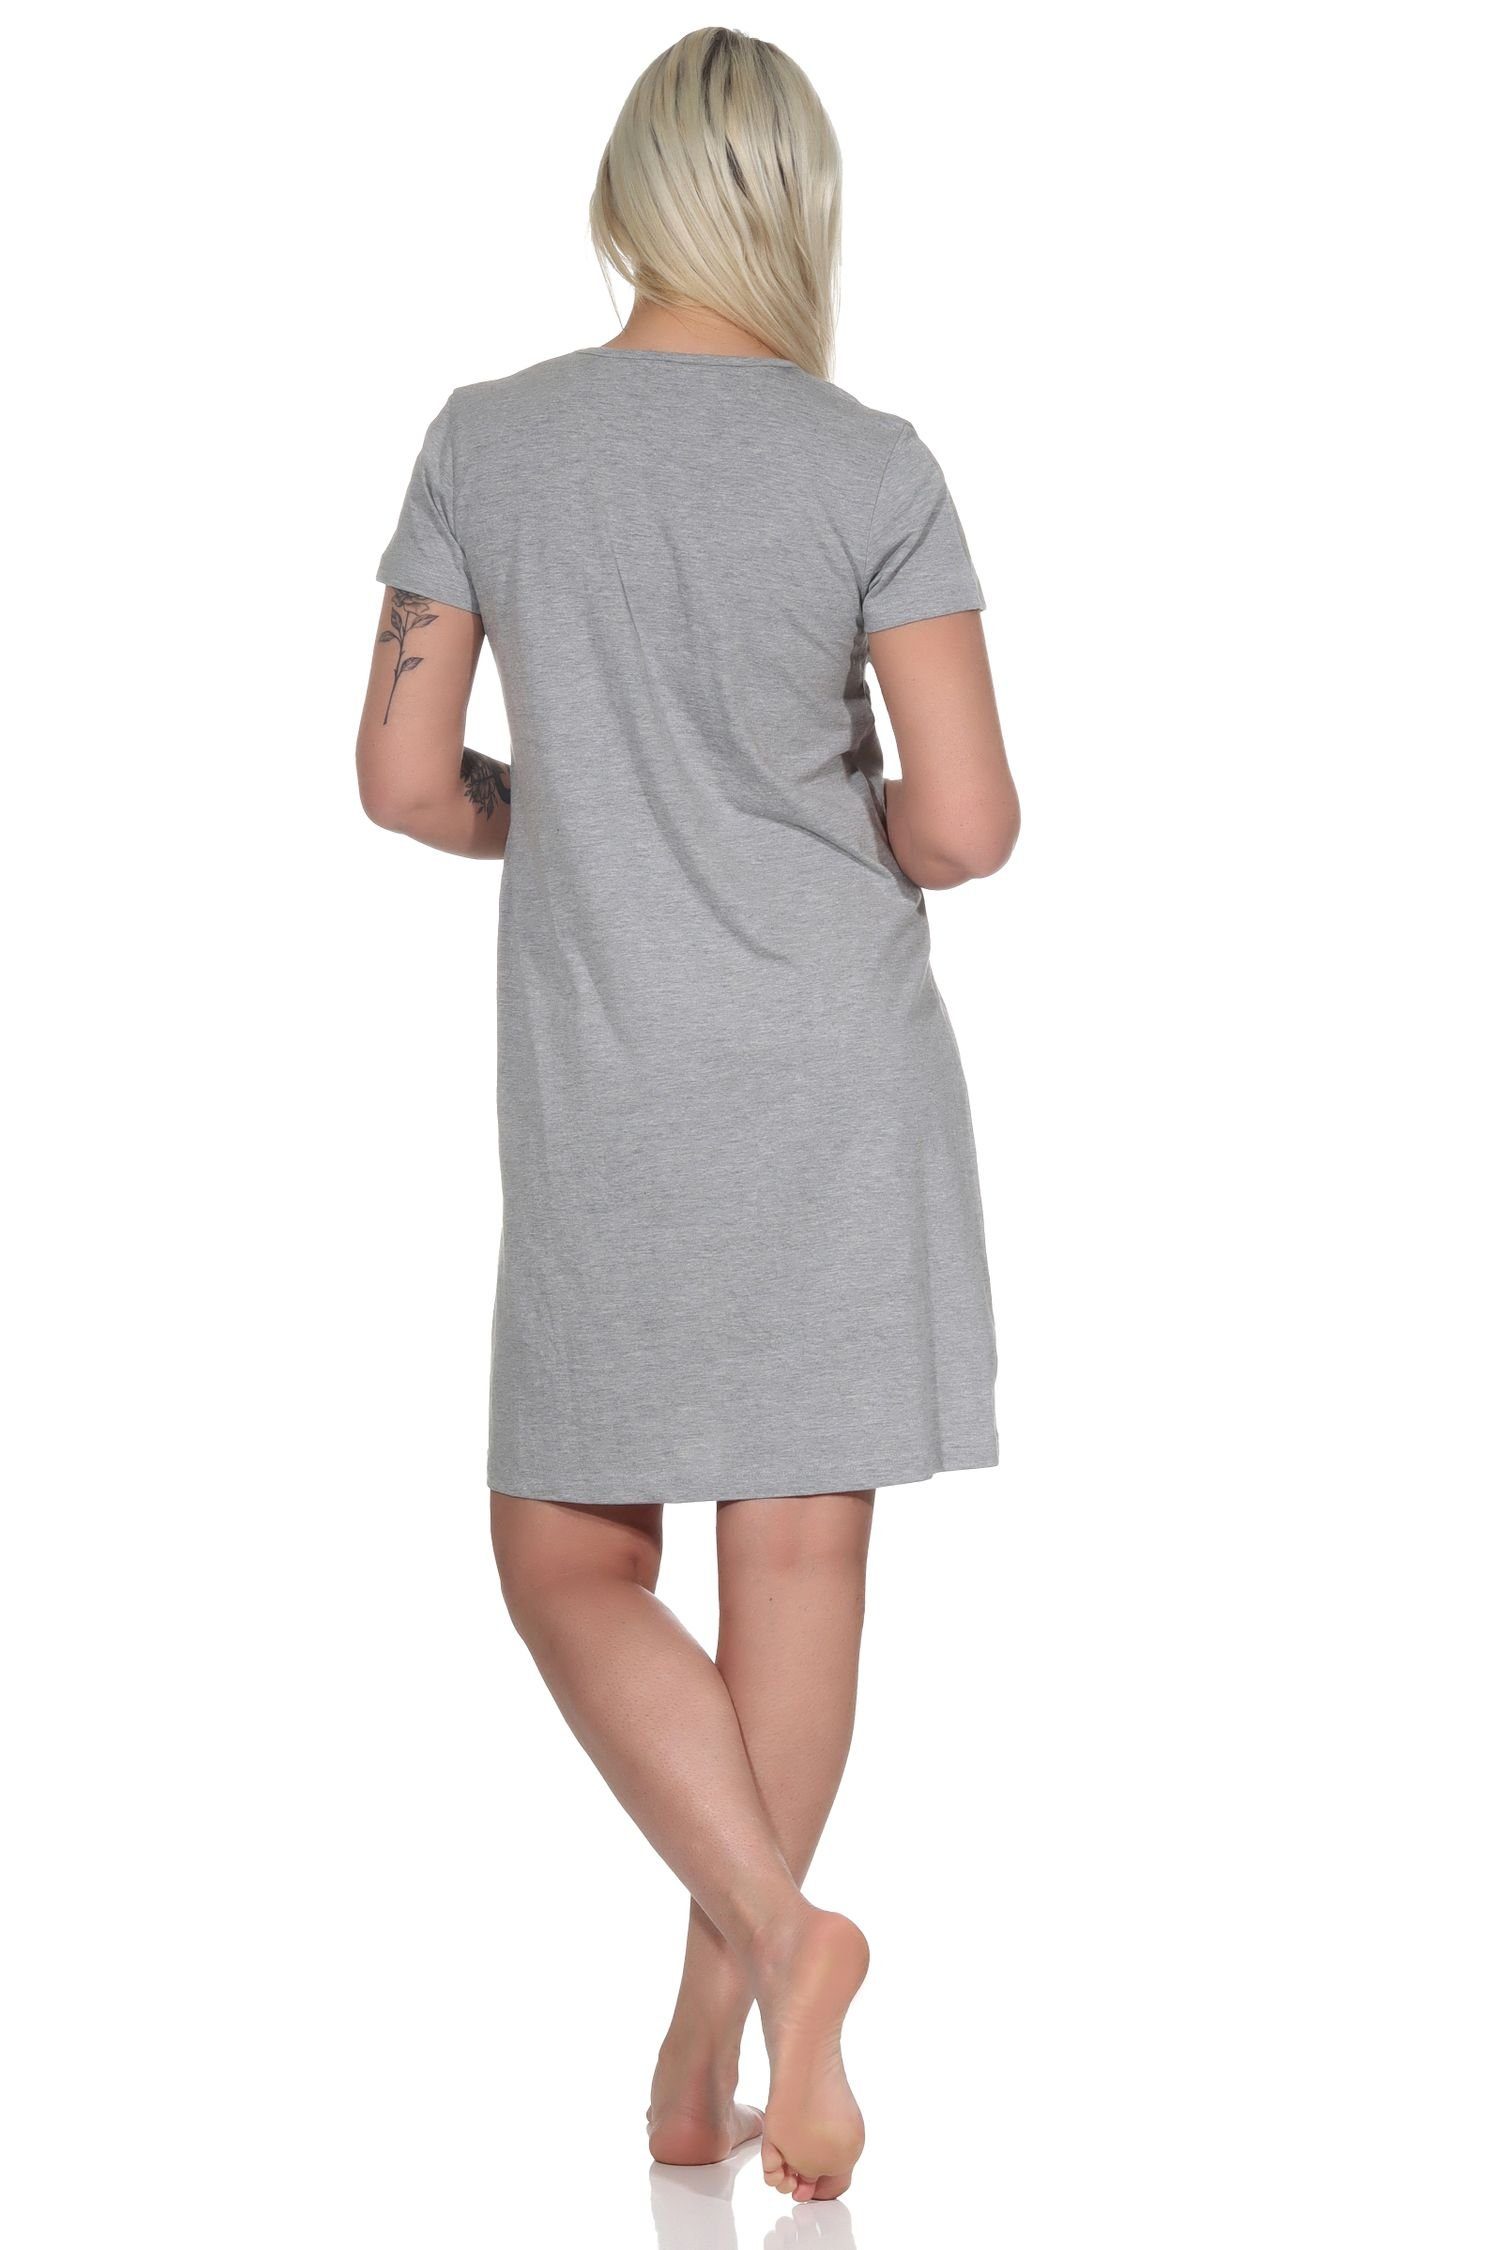 schöner Kurznachthemd, Bigshirt Damen Normann Stern-Applikation hellgrau Nachthemd mit